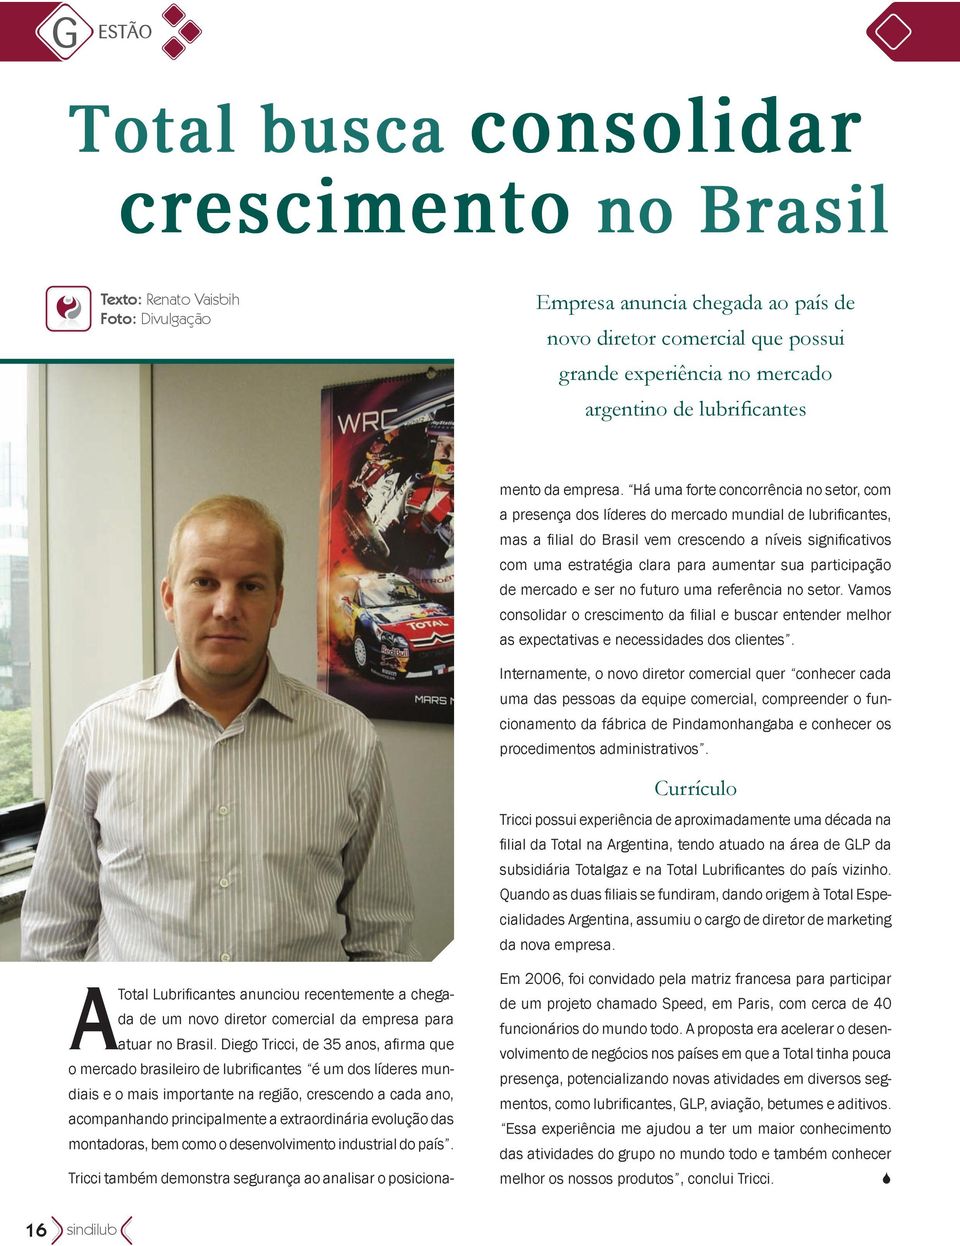 Diego Tricci, de 35 anos, afirma que o mercado brasileiro de lubrificantes é um dos líderes mundiais e o mais importante na região, crescendo a cada ano, acompanhando principalmente a extraordinária